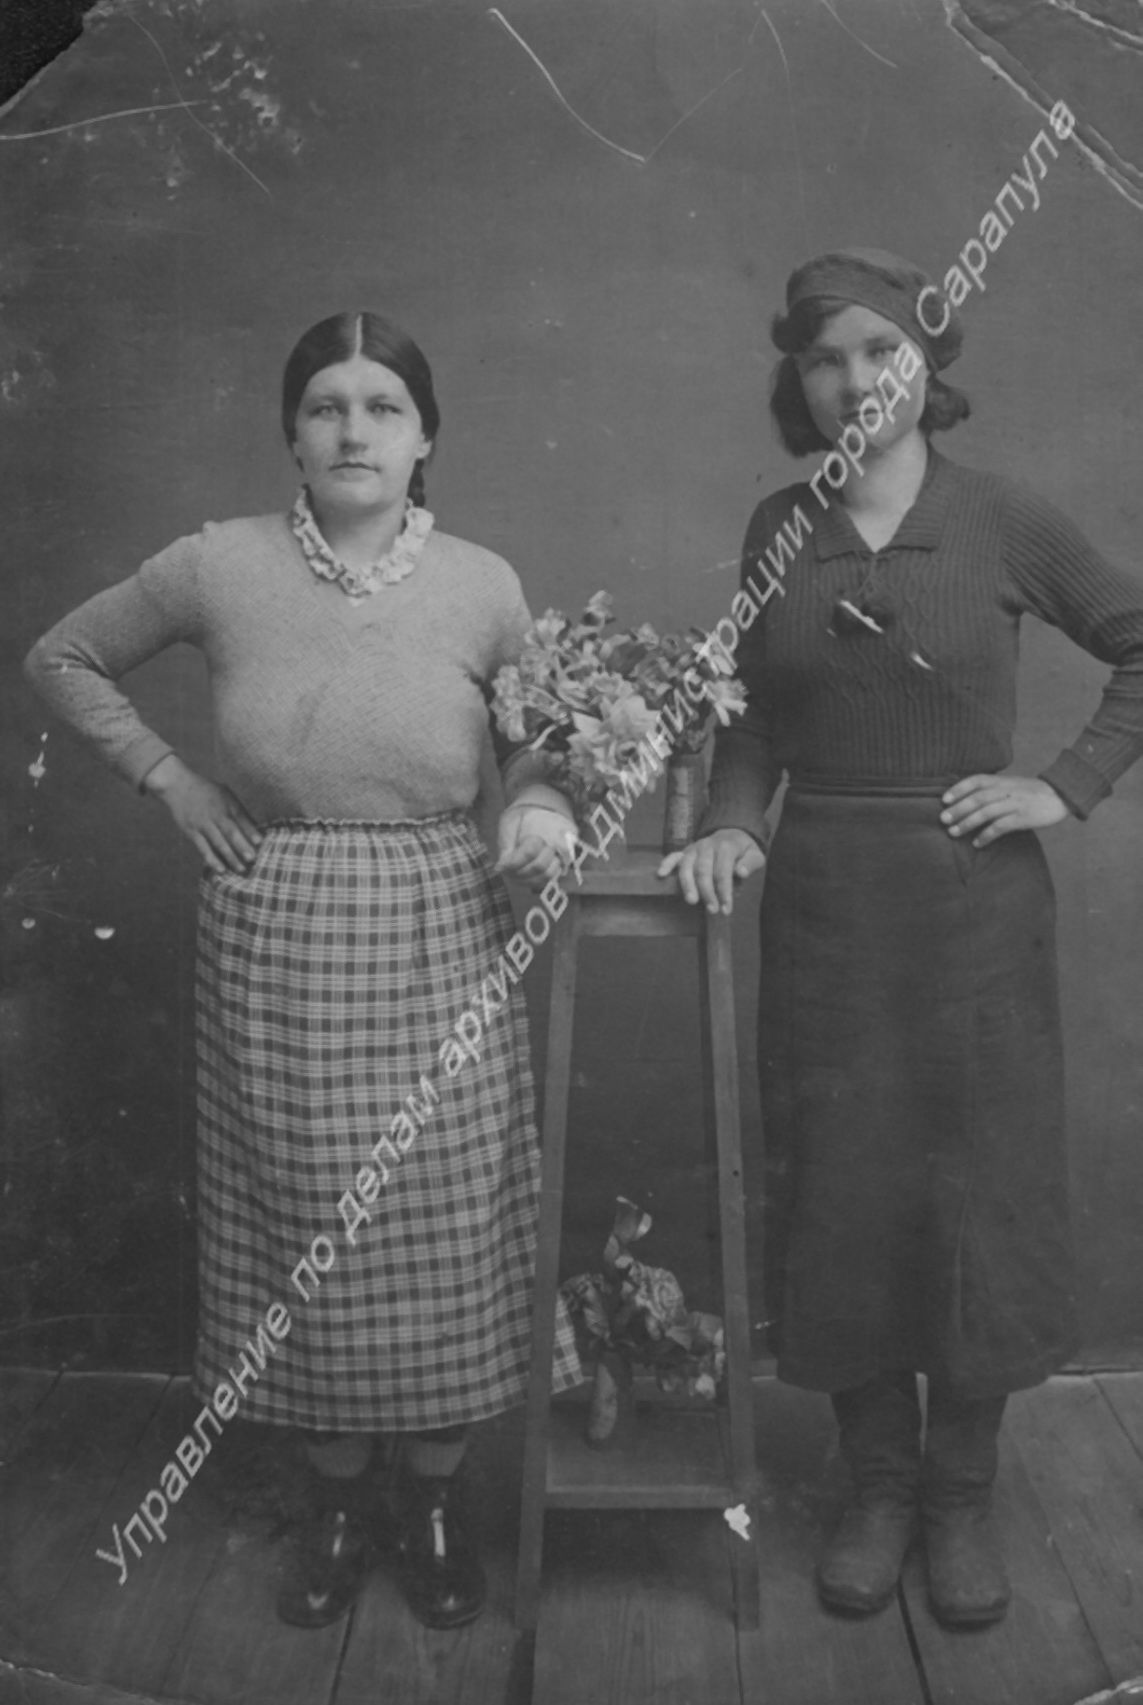 Жительницы села Каракулино.
Слева направо Бывальцева Наталья Алексеевна и Бывальцева Анна Алексеевна
